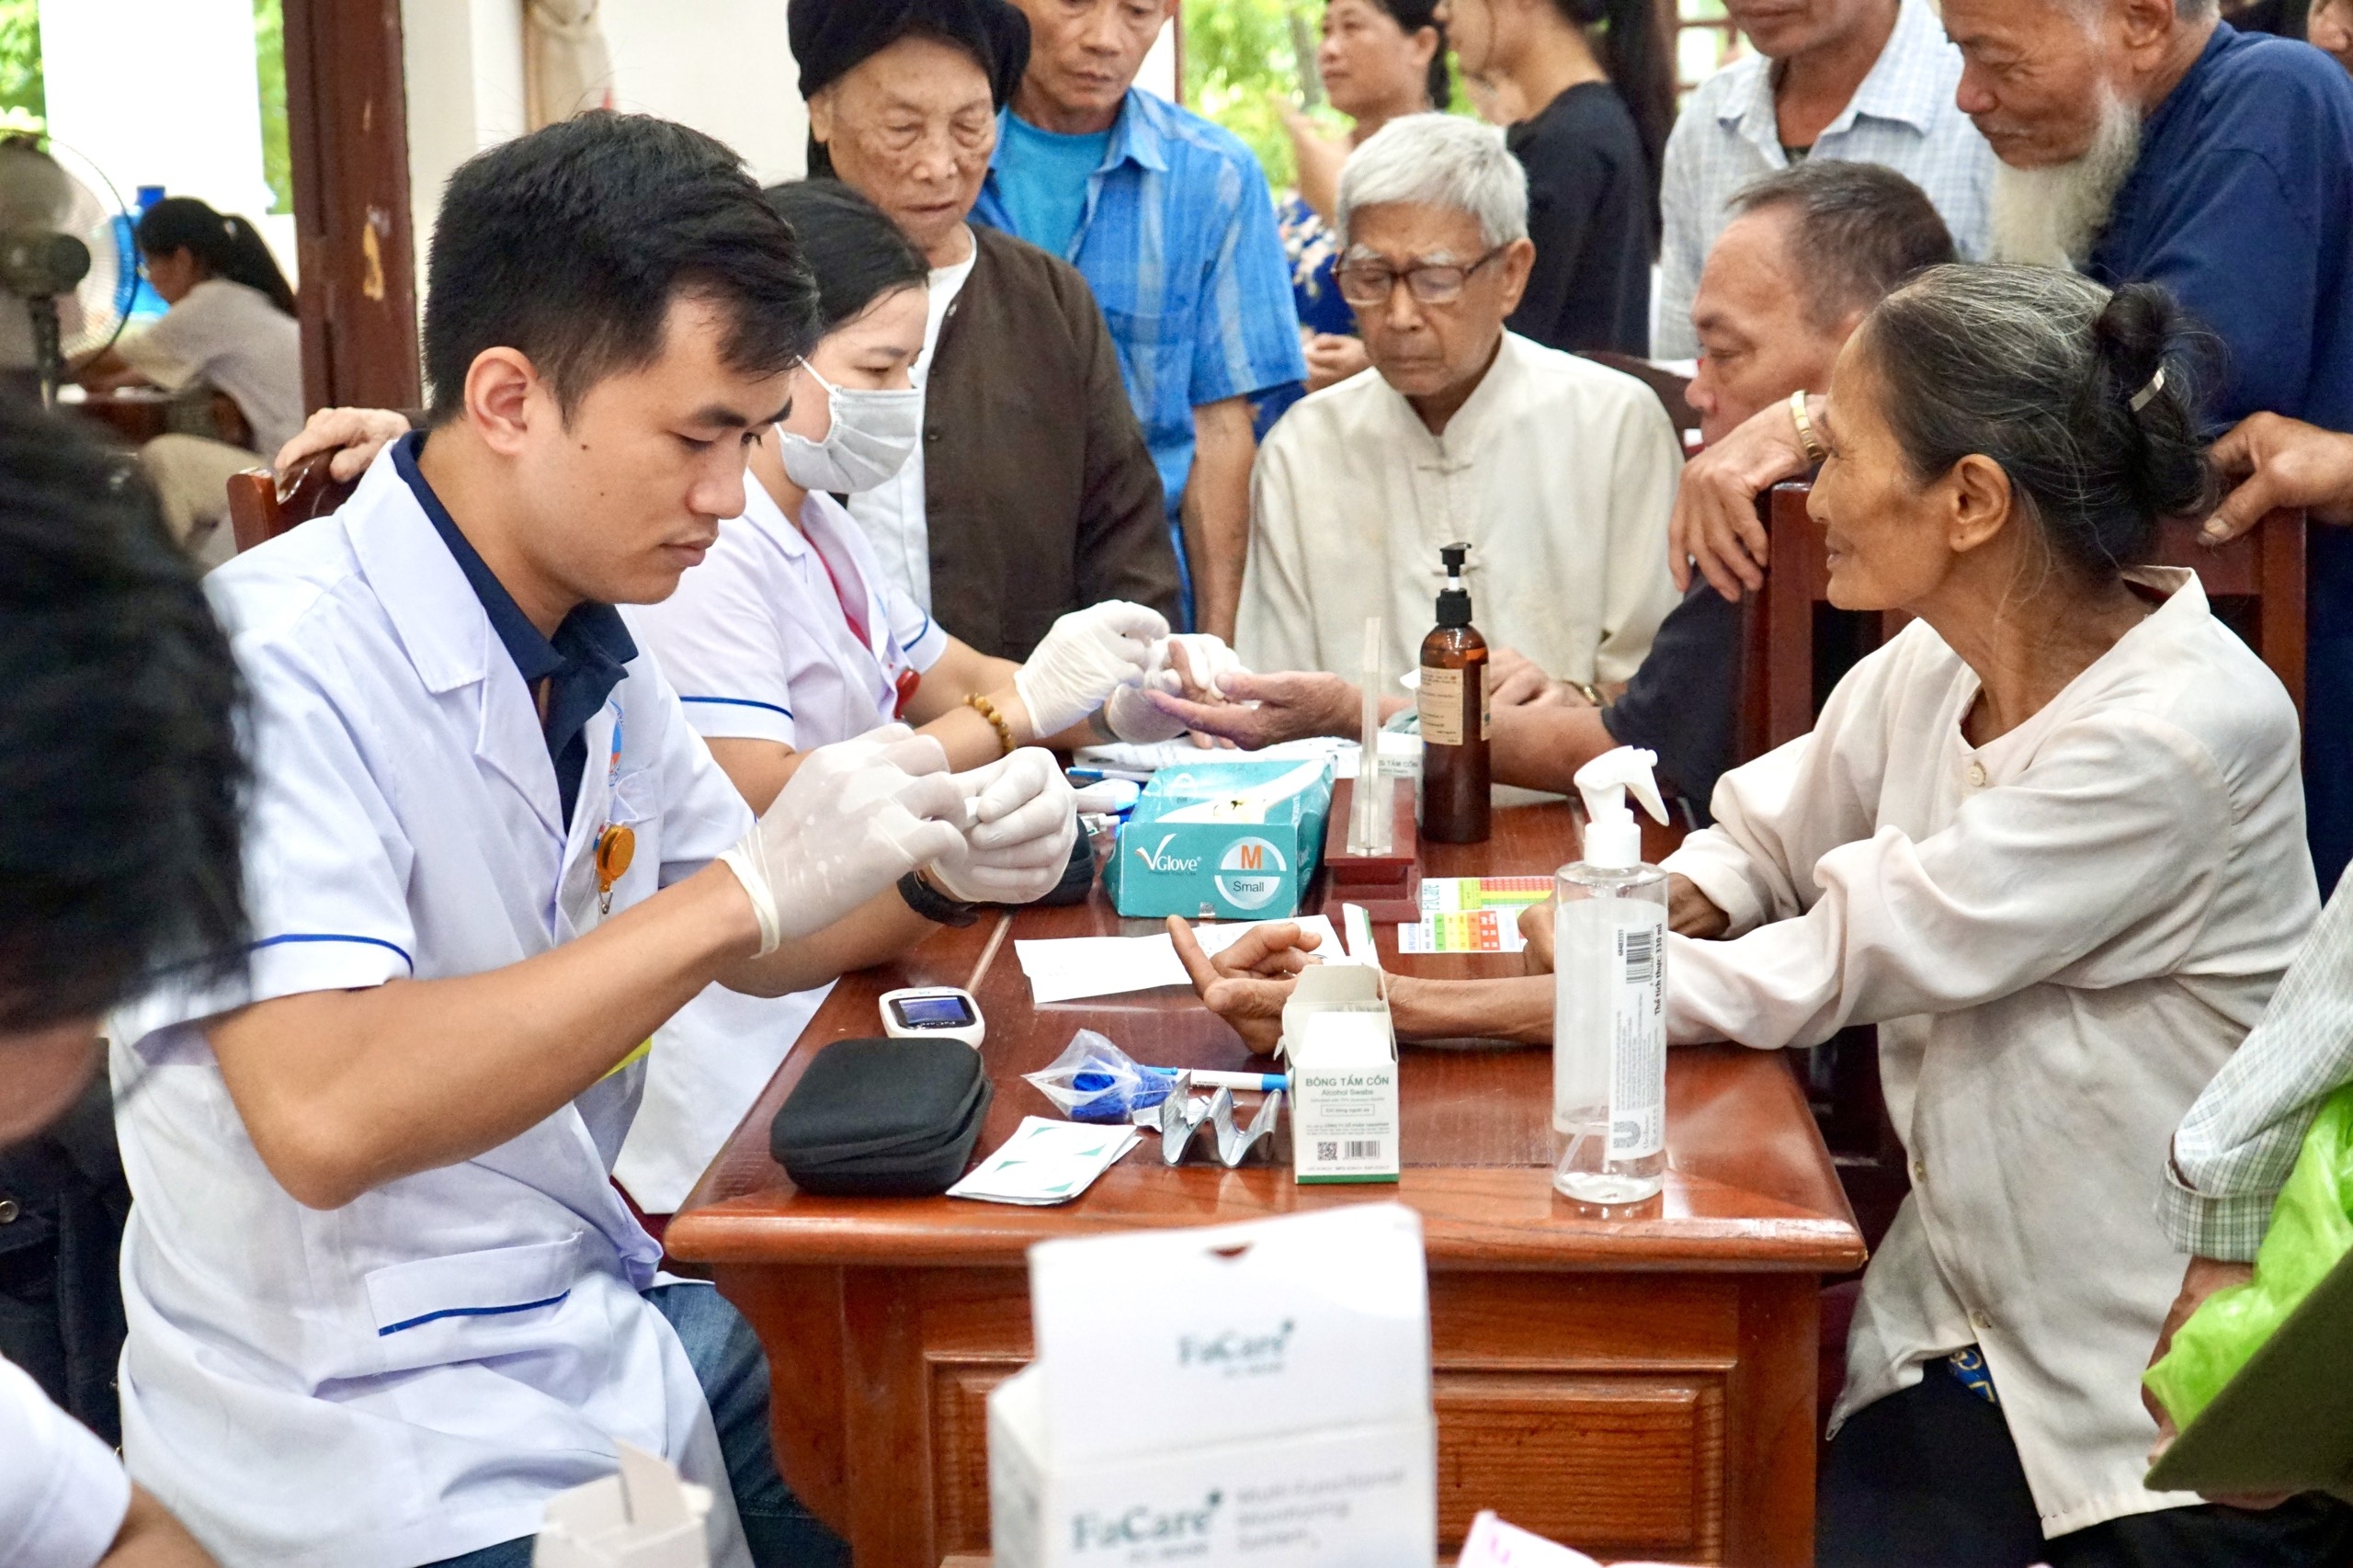 Khám, sàng lọc bệnh lý cho 300 người dân tại xã đảo Minh Châu